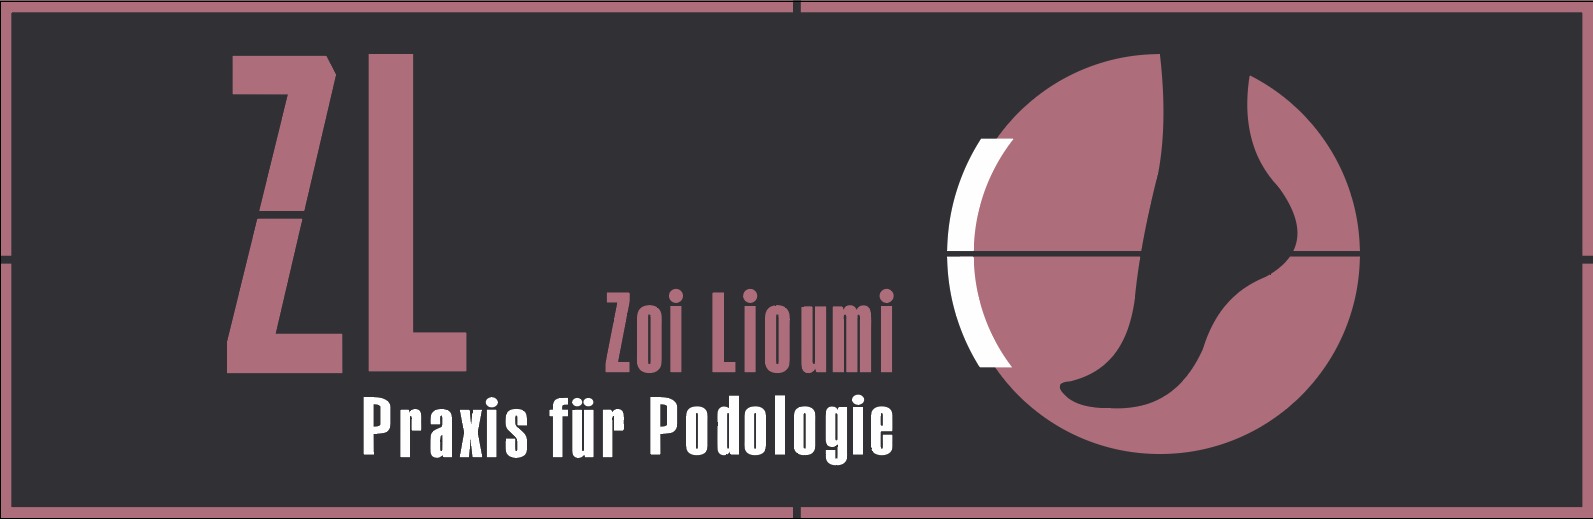 Bild 10 Praxis für Podologie Zoi Lioumi in Köln